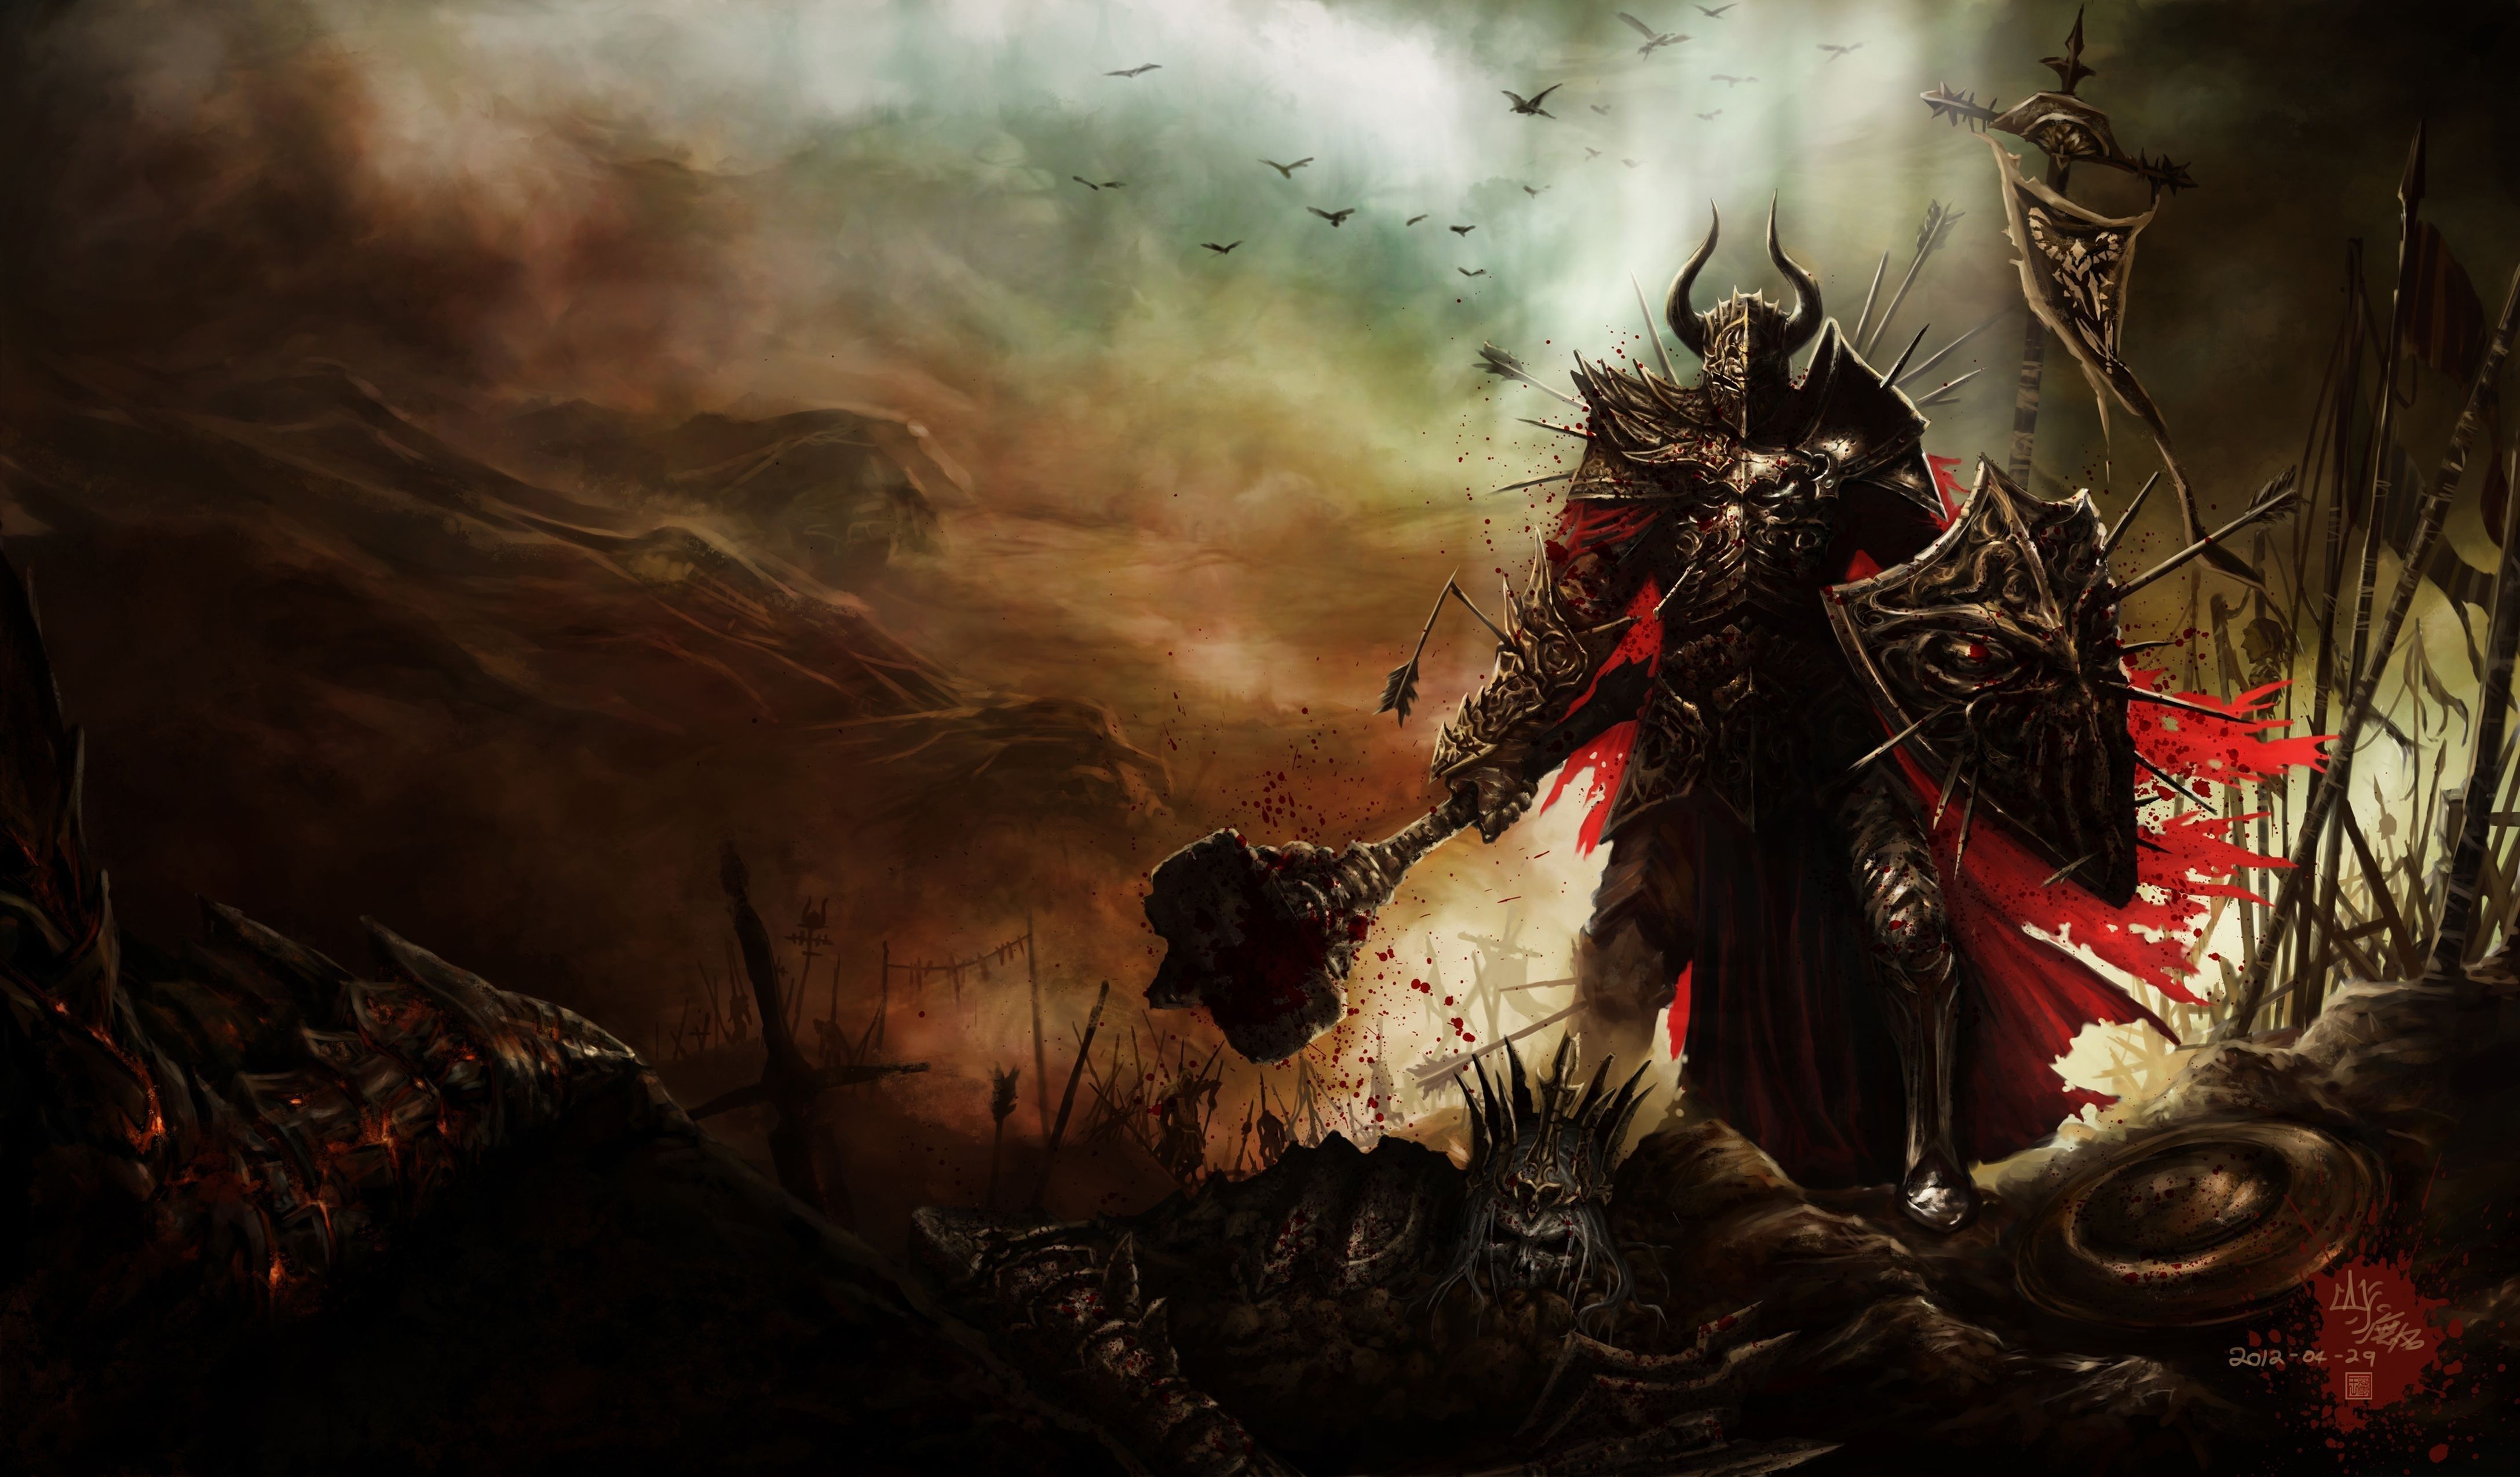 410 Diablo III HD Wallpapers | Backgrounds - Wallpaper Abyss